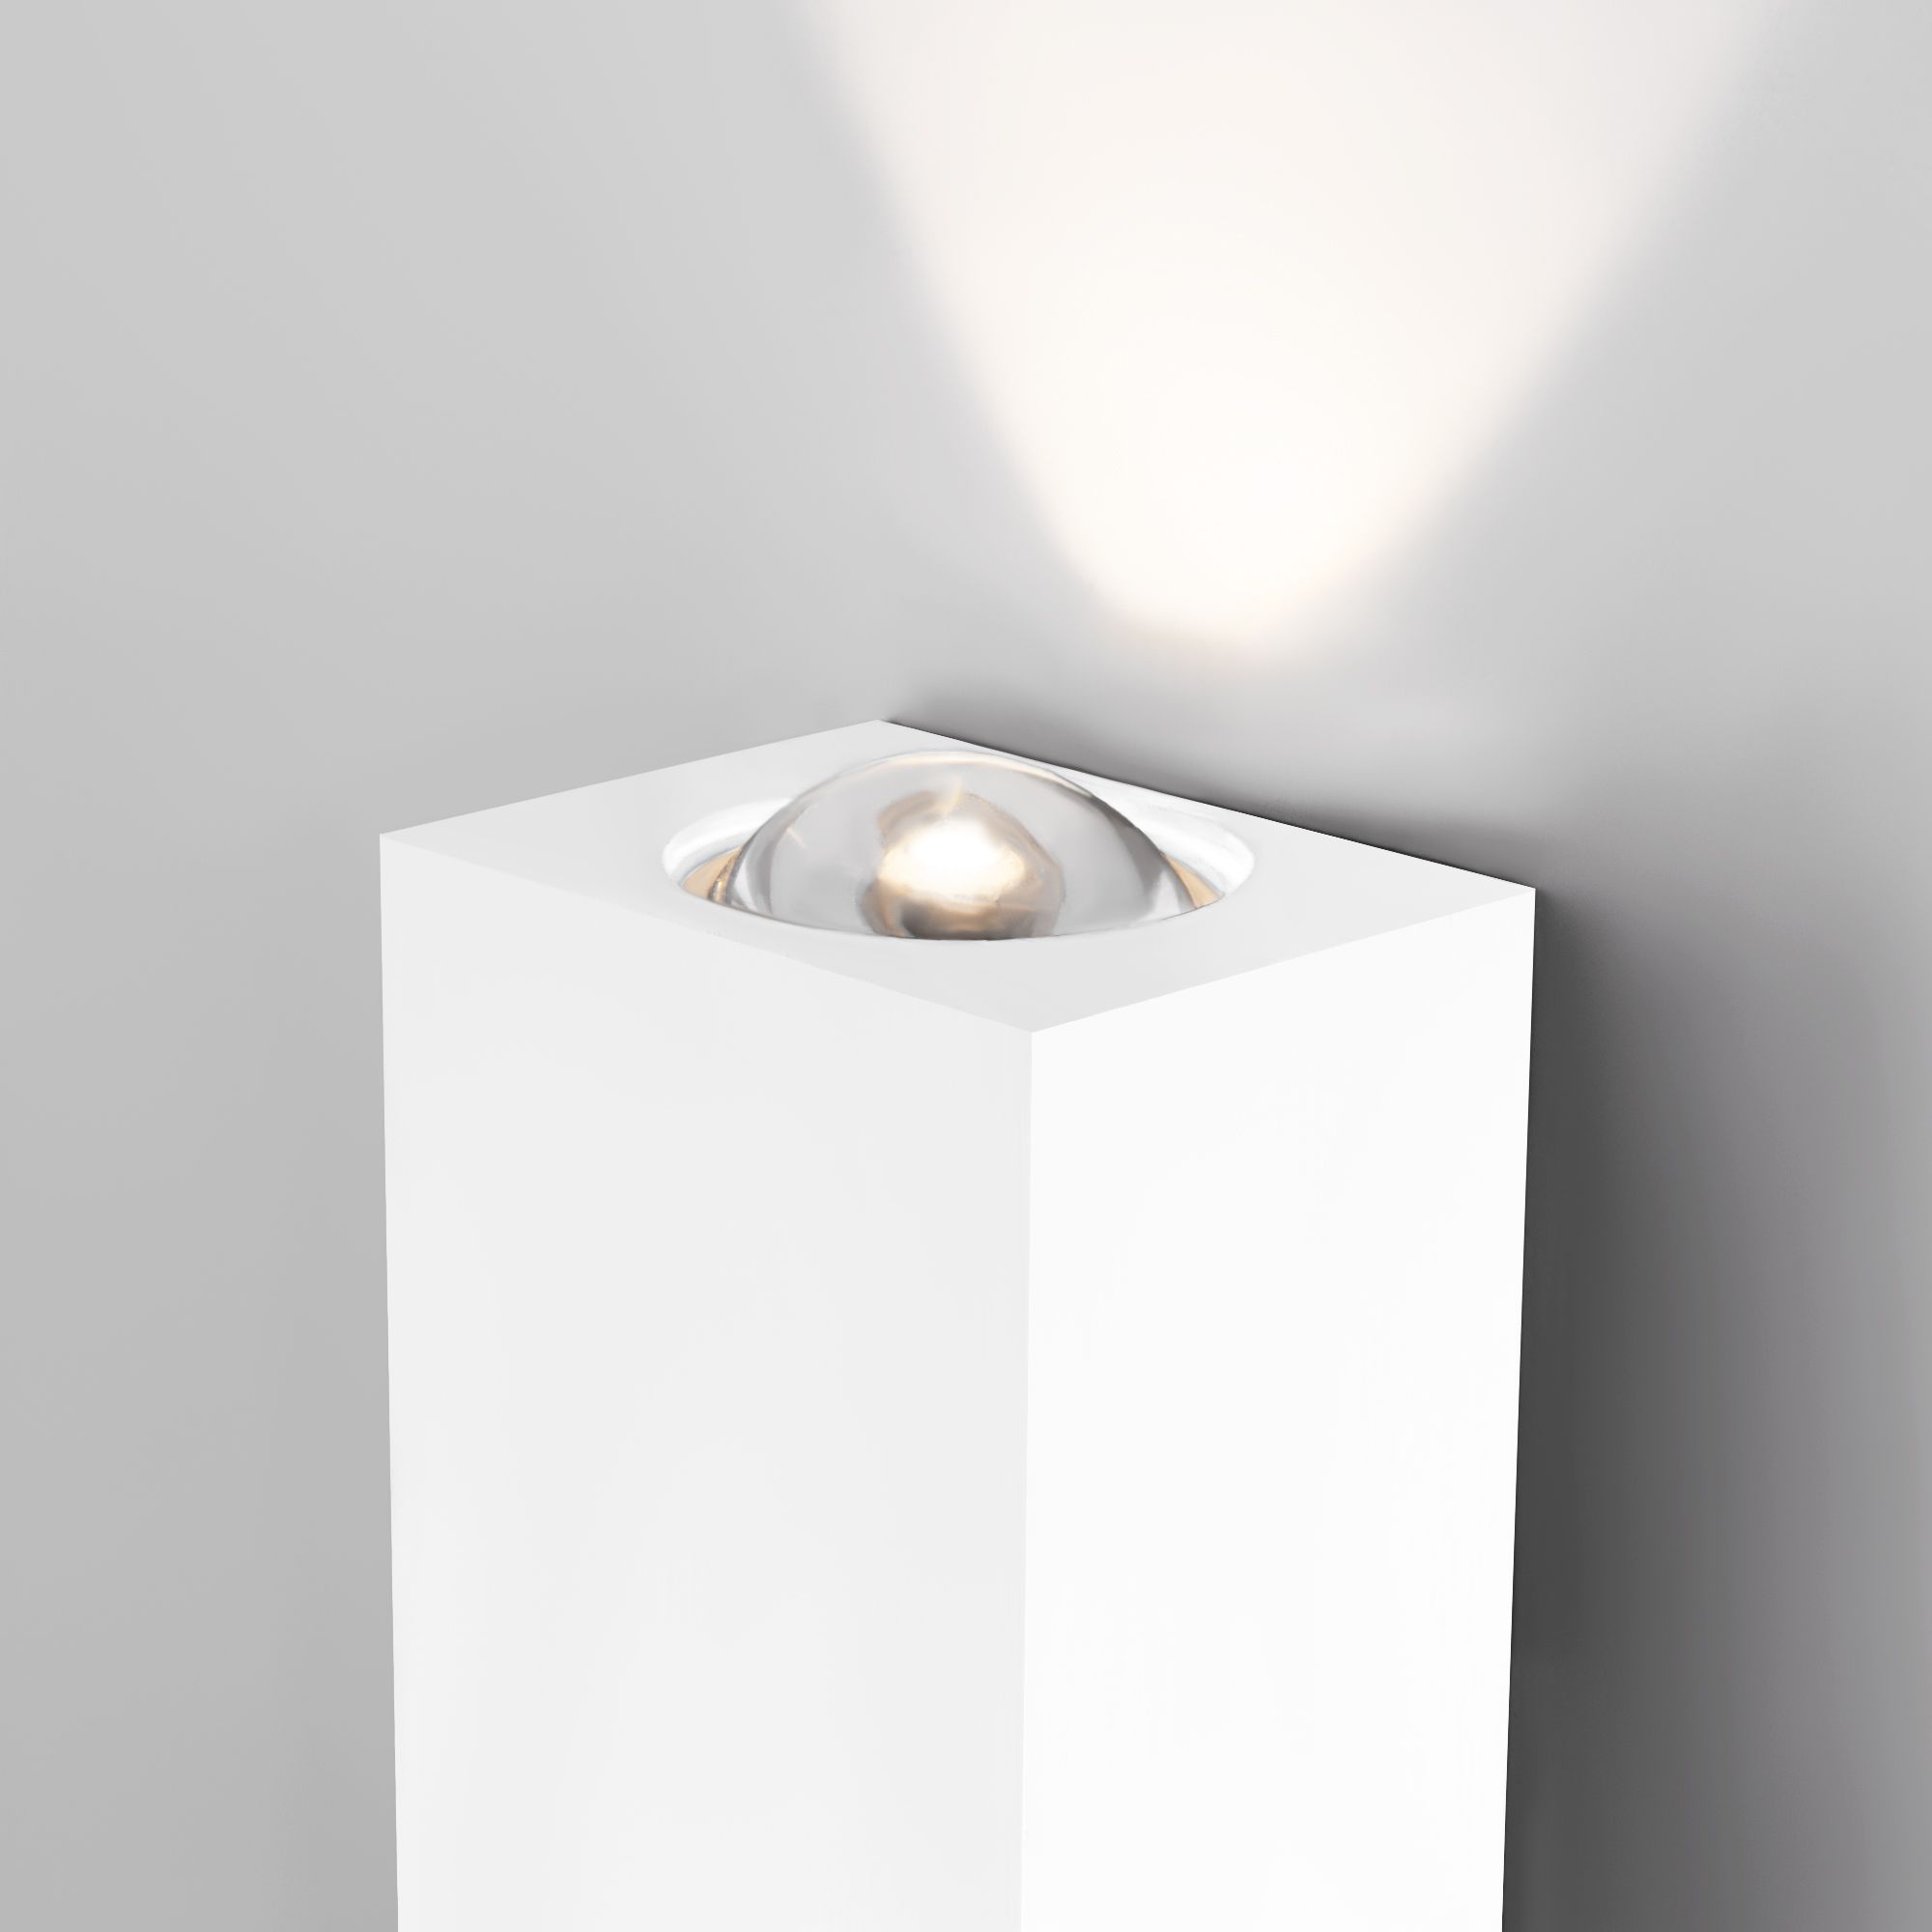 Настенный светодиодный светильник Petite LED 40110/LED белый